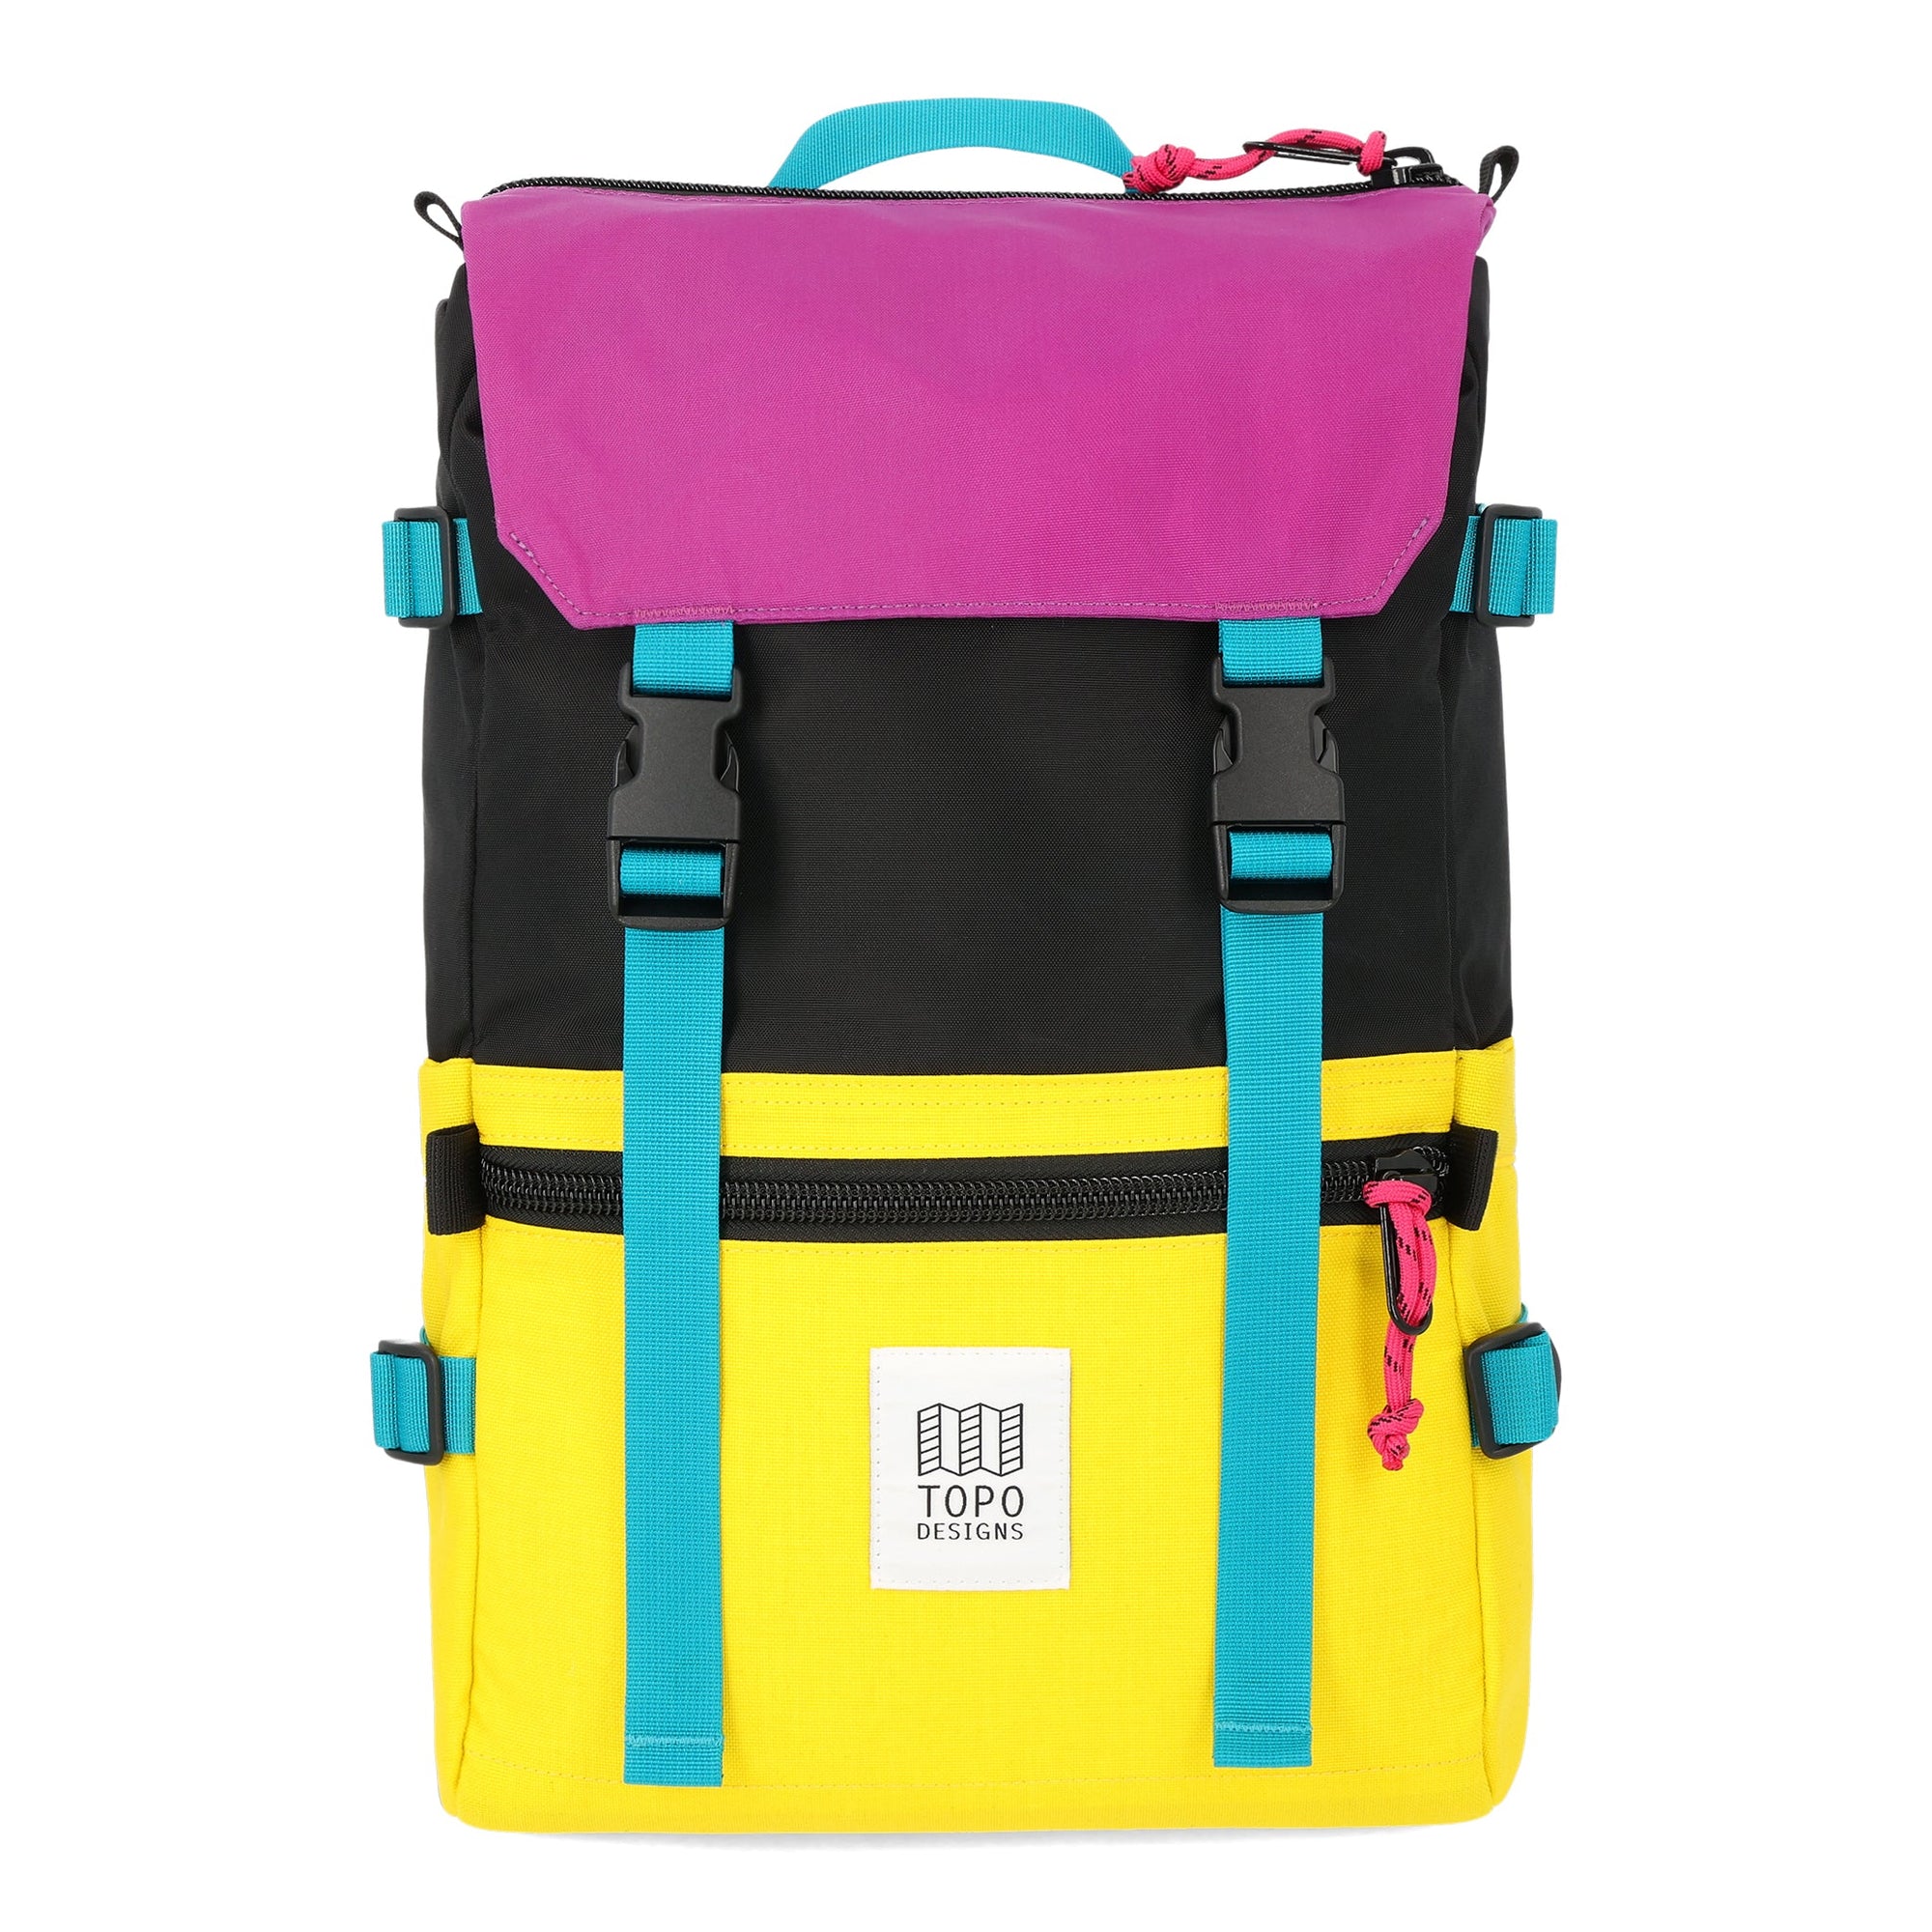 Topo Designs Rover Pack Bright Yellow/Black bags Topo Designs 